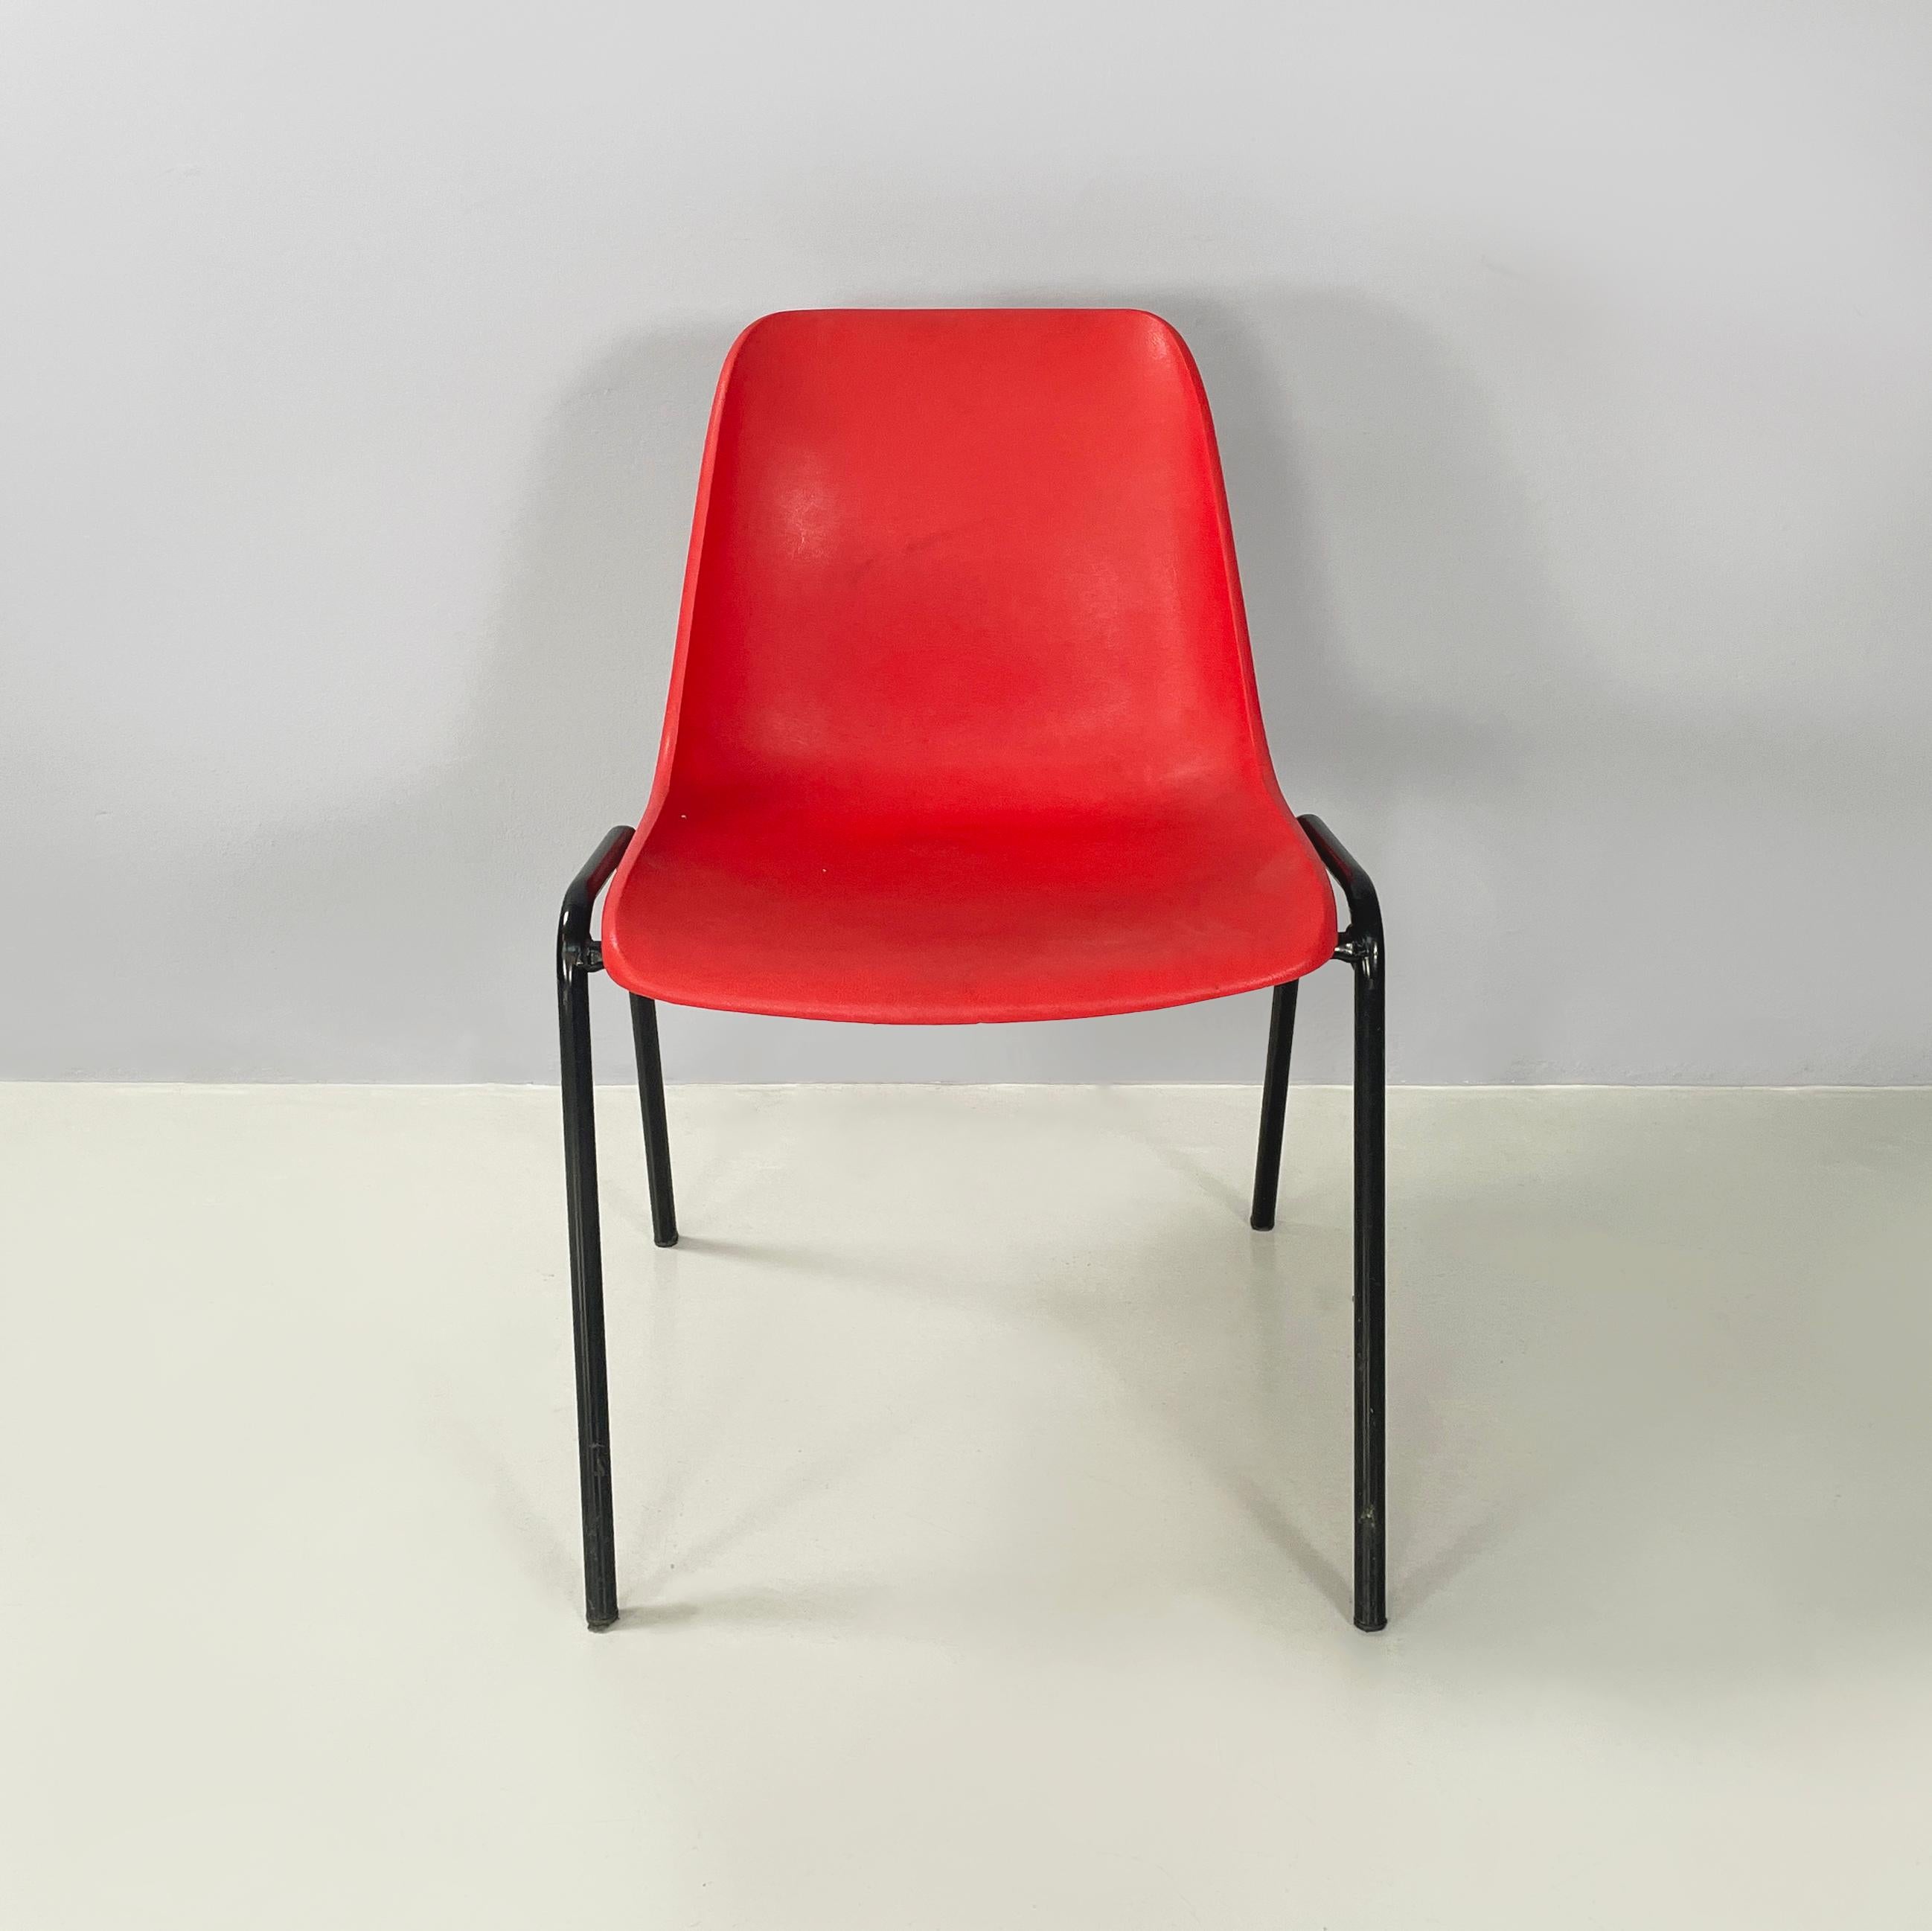 Moderne italienische stapelbare Stühle aus rotem Kunststoff und schwarzem Metall, 2000
Satz von 5 Stühlen mit gebogenem Monocoque aus rotem Kunststoff. Die Beine sind aus schwarz lackierten Metallstäben gefertigt. Stapelbar.
2000. Unter dem Sitz